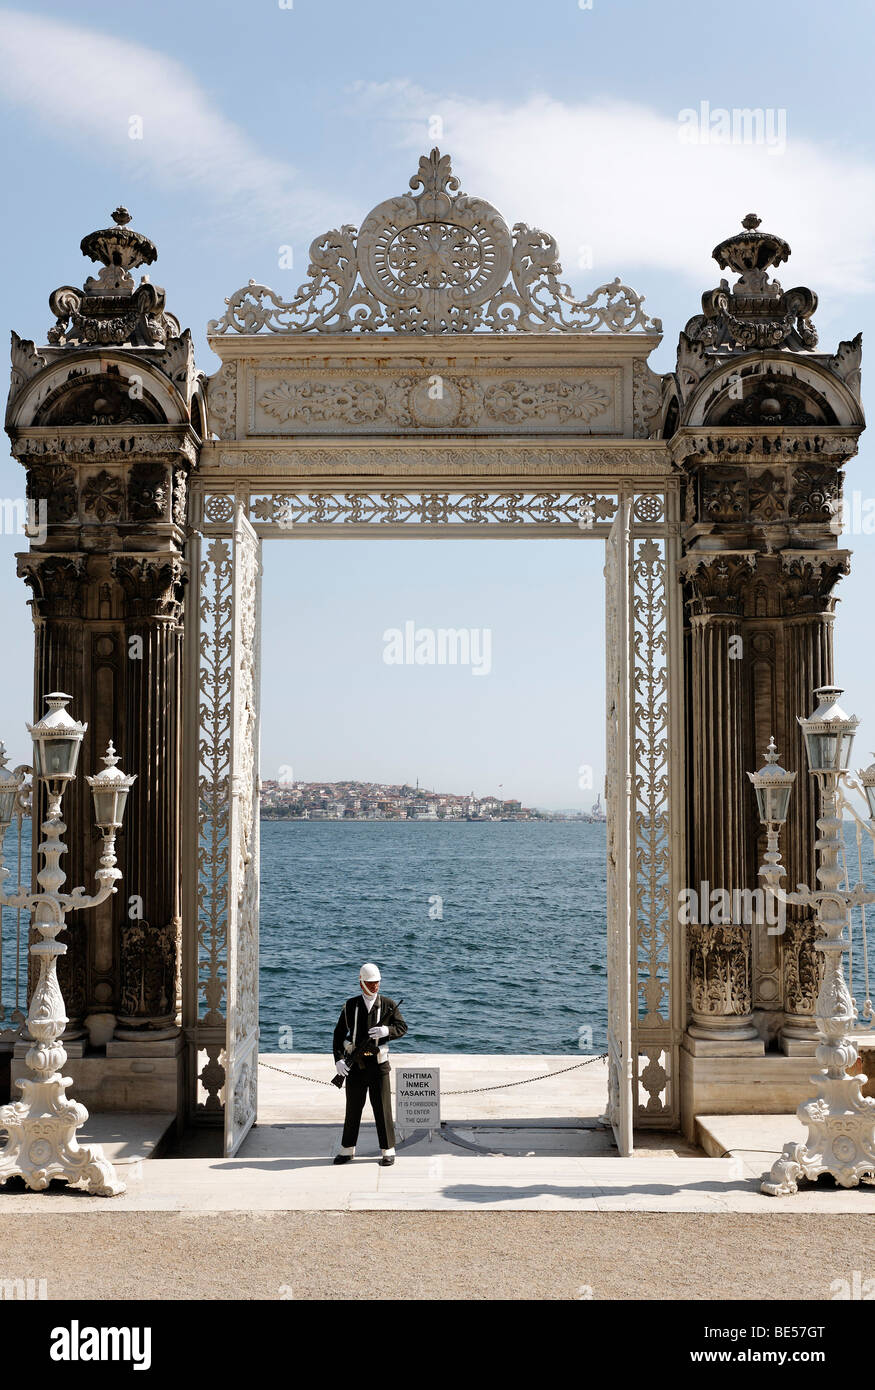 Entrée principale sur la rive du Bosphore, avec les gardiens, le Palais de Dolmabahçe, Besiktas, Istanbul, Turquie Banque D'Images